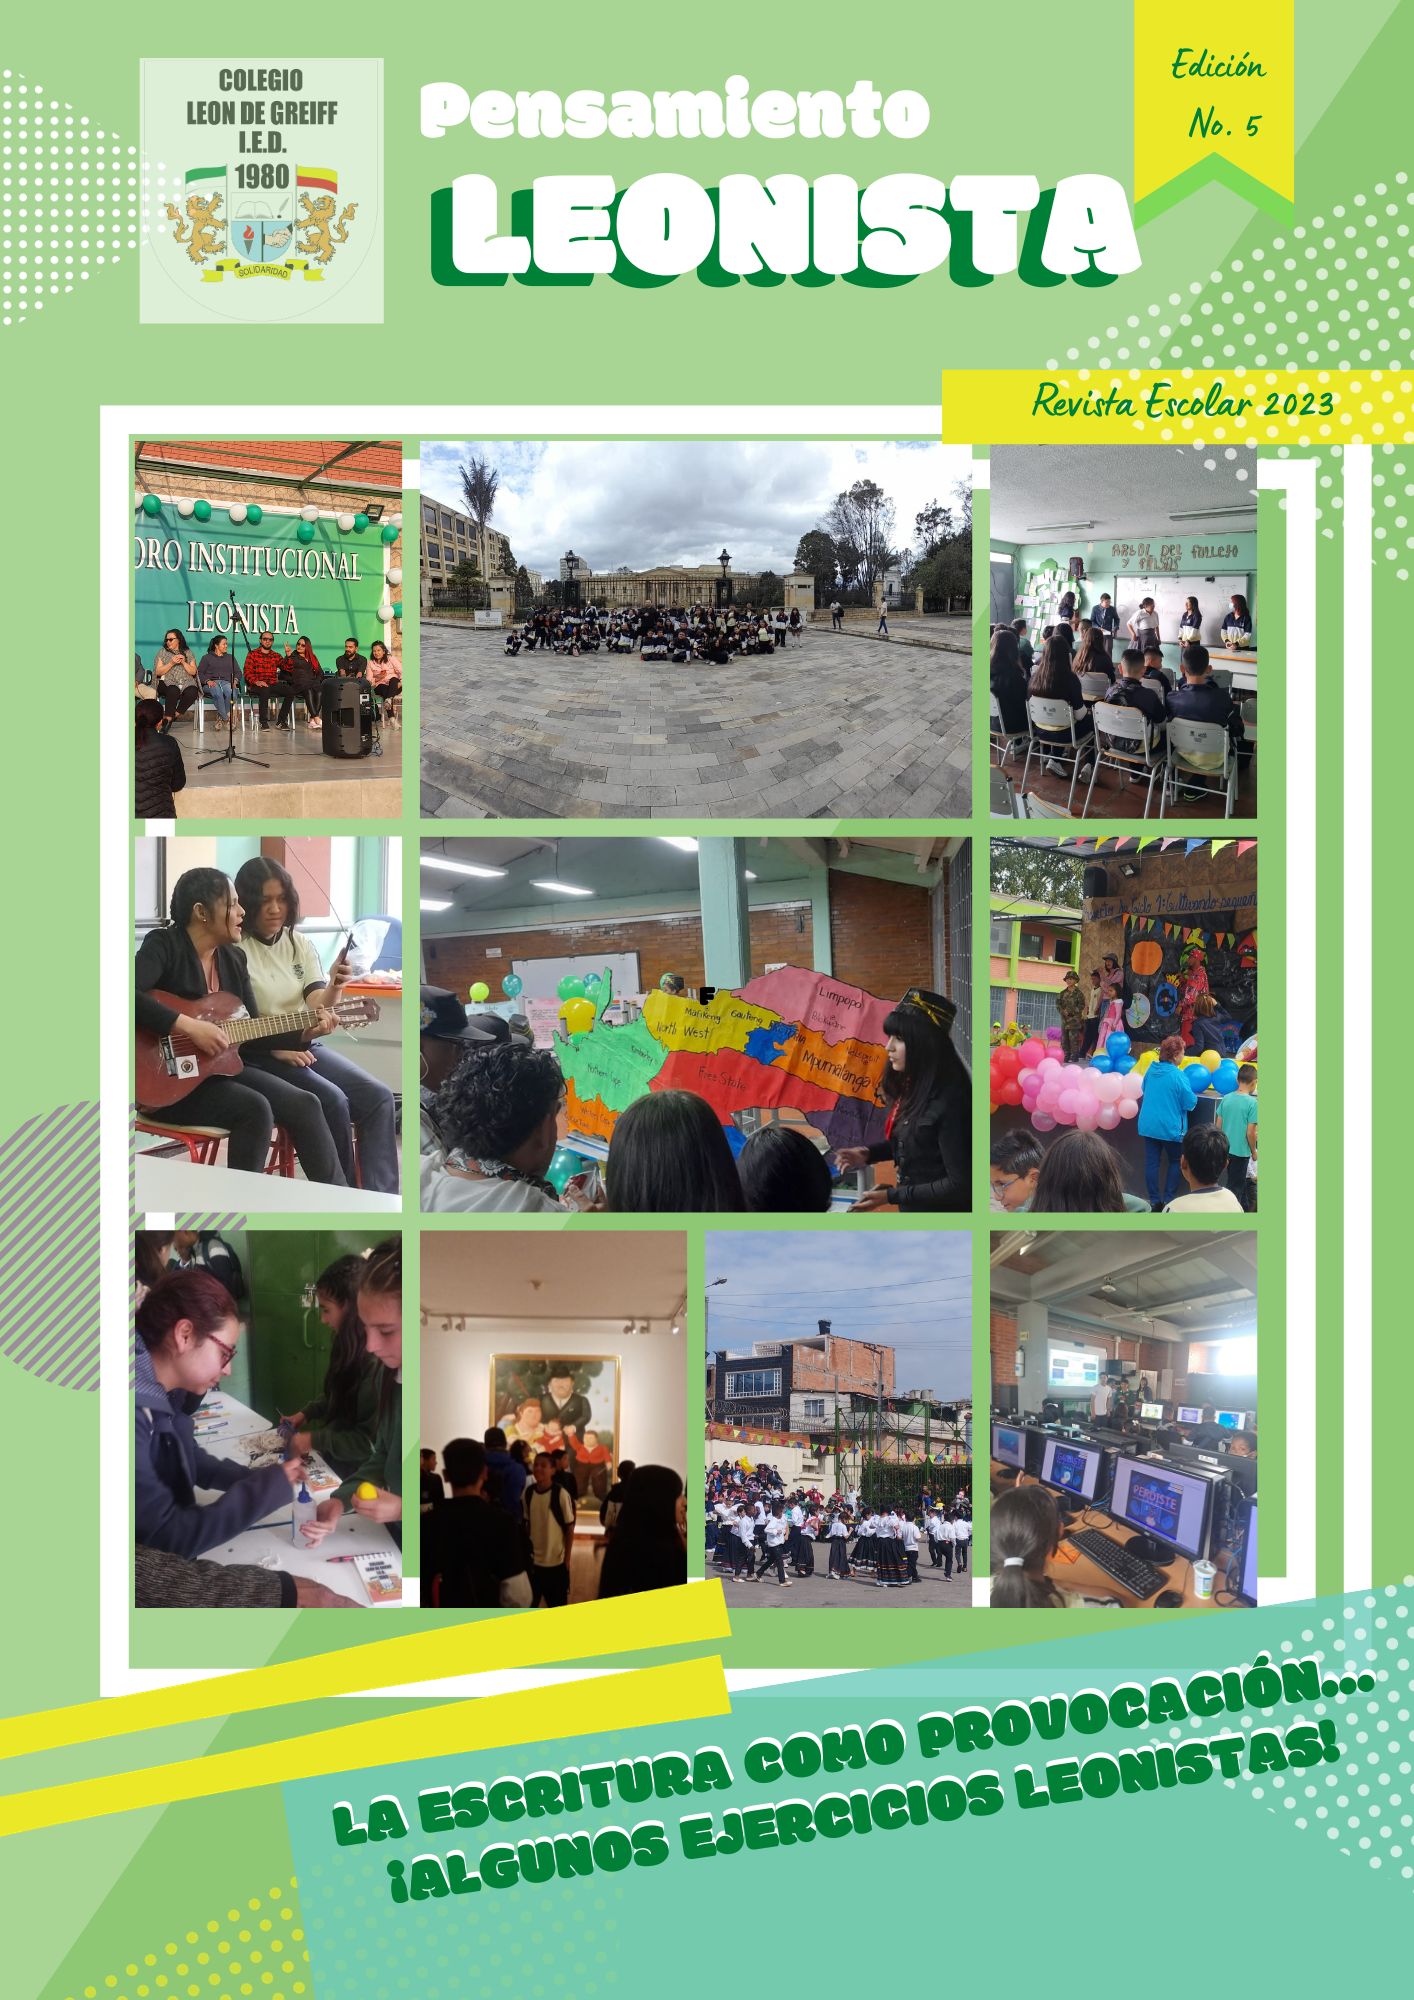 Pensamiento Leonista- Revista escolar 2023, Edición No. 5 fotos en collage de eventos del año.